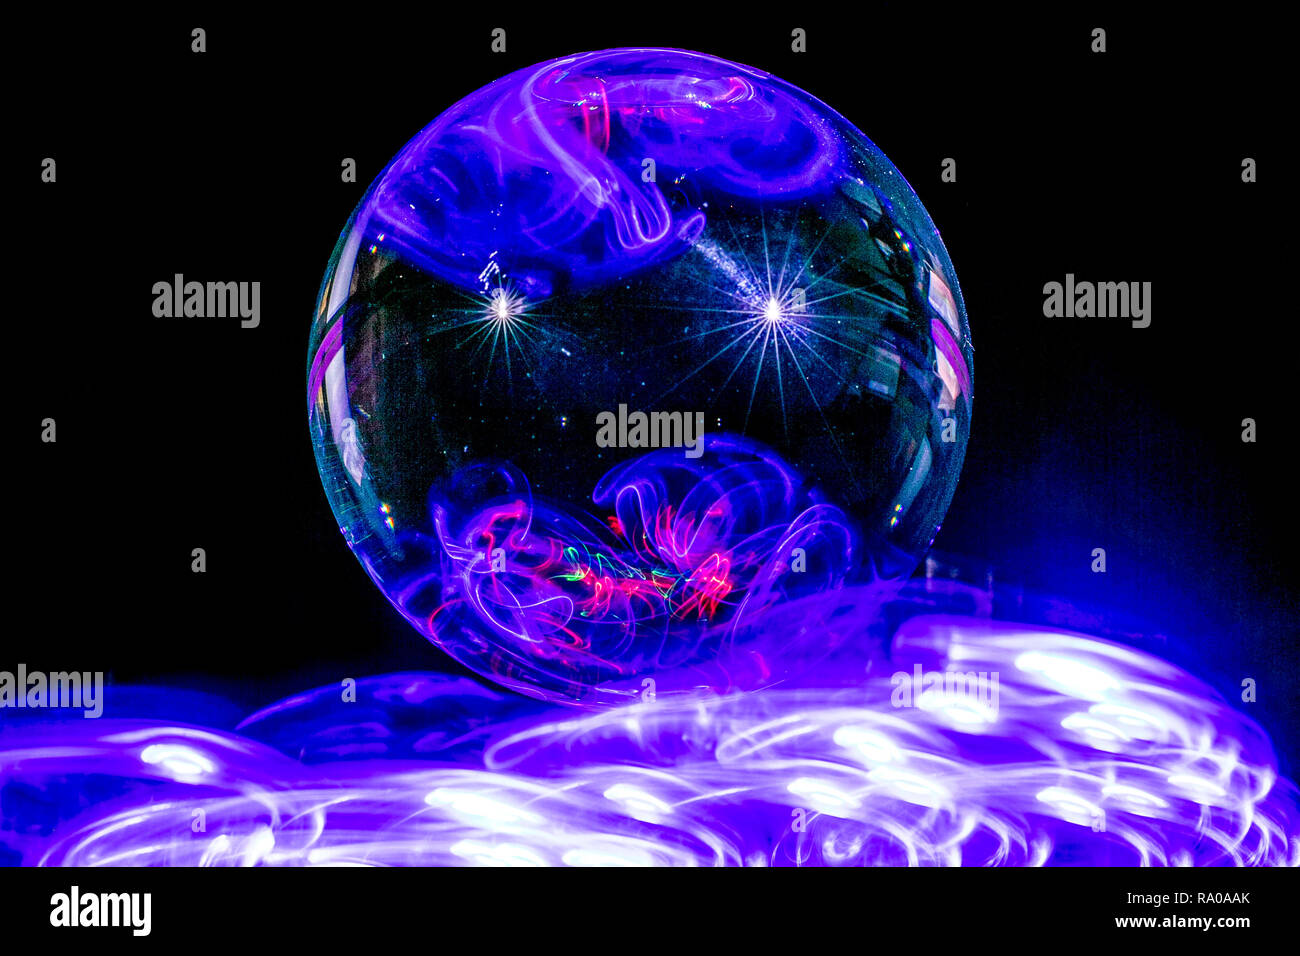 Galaxie dans un globe de lumière - peinture avec un Lensball / Crystal / bille de verre Banque D'Images